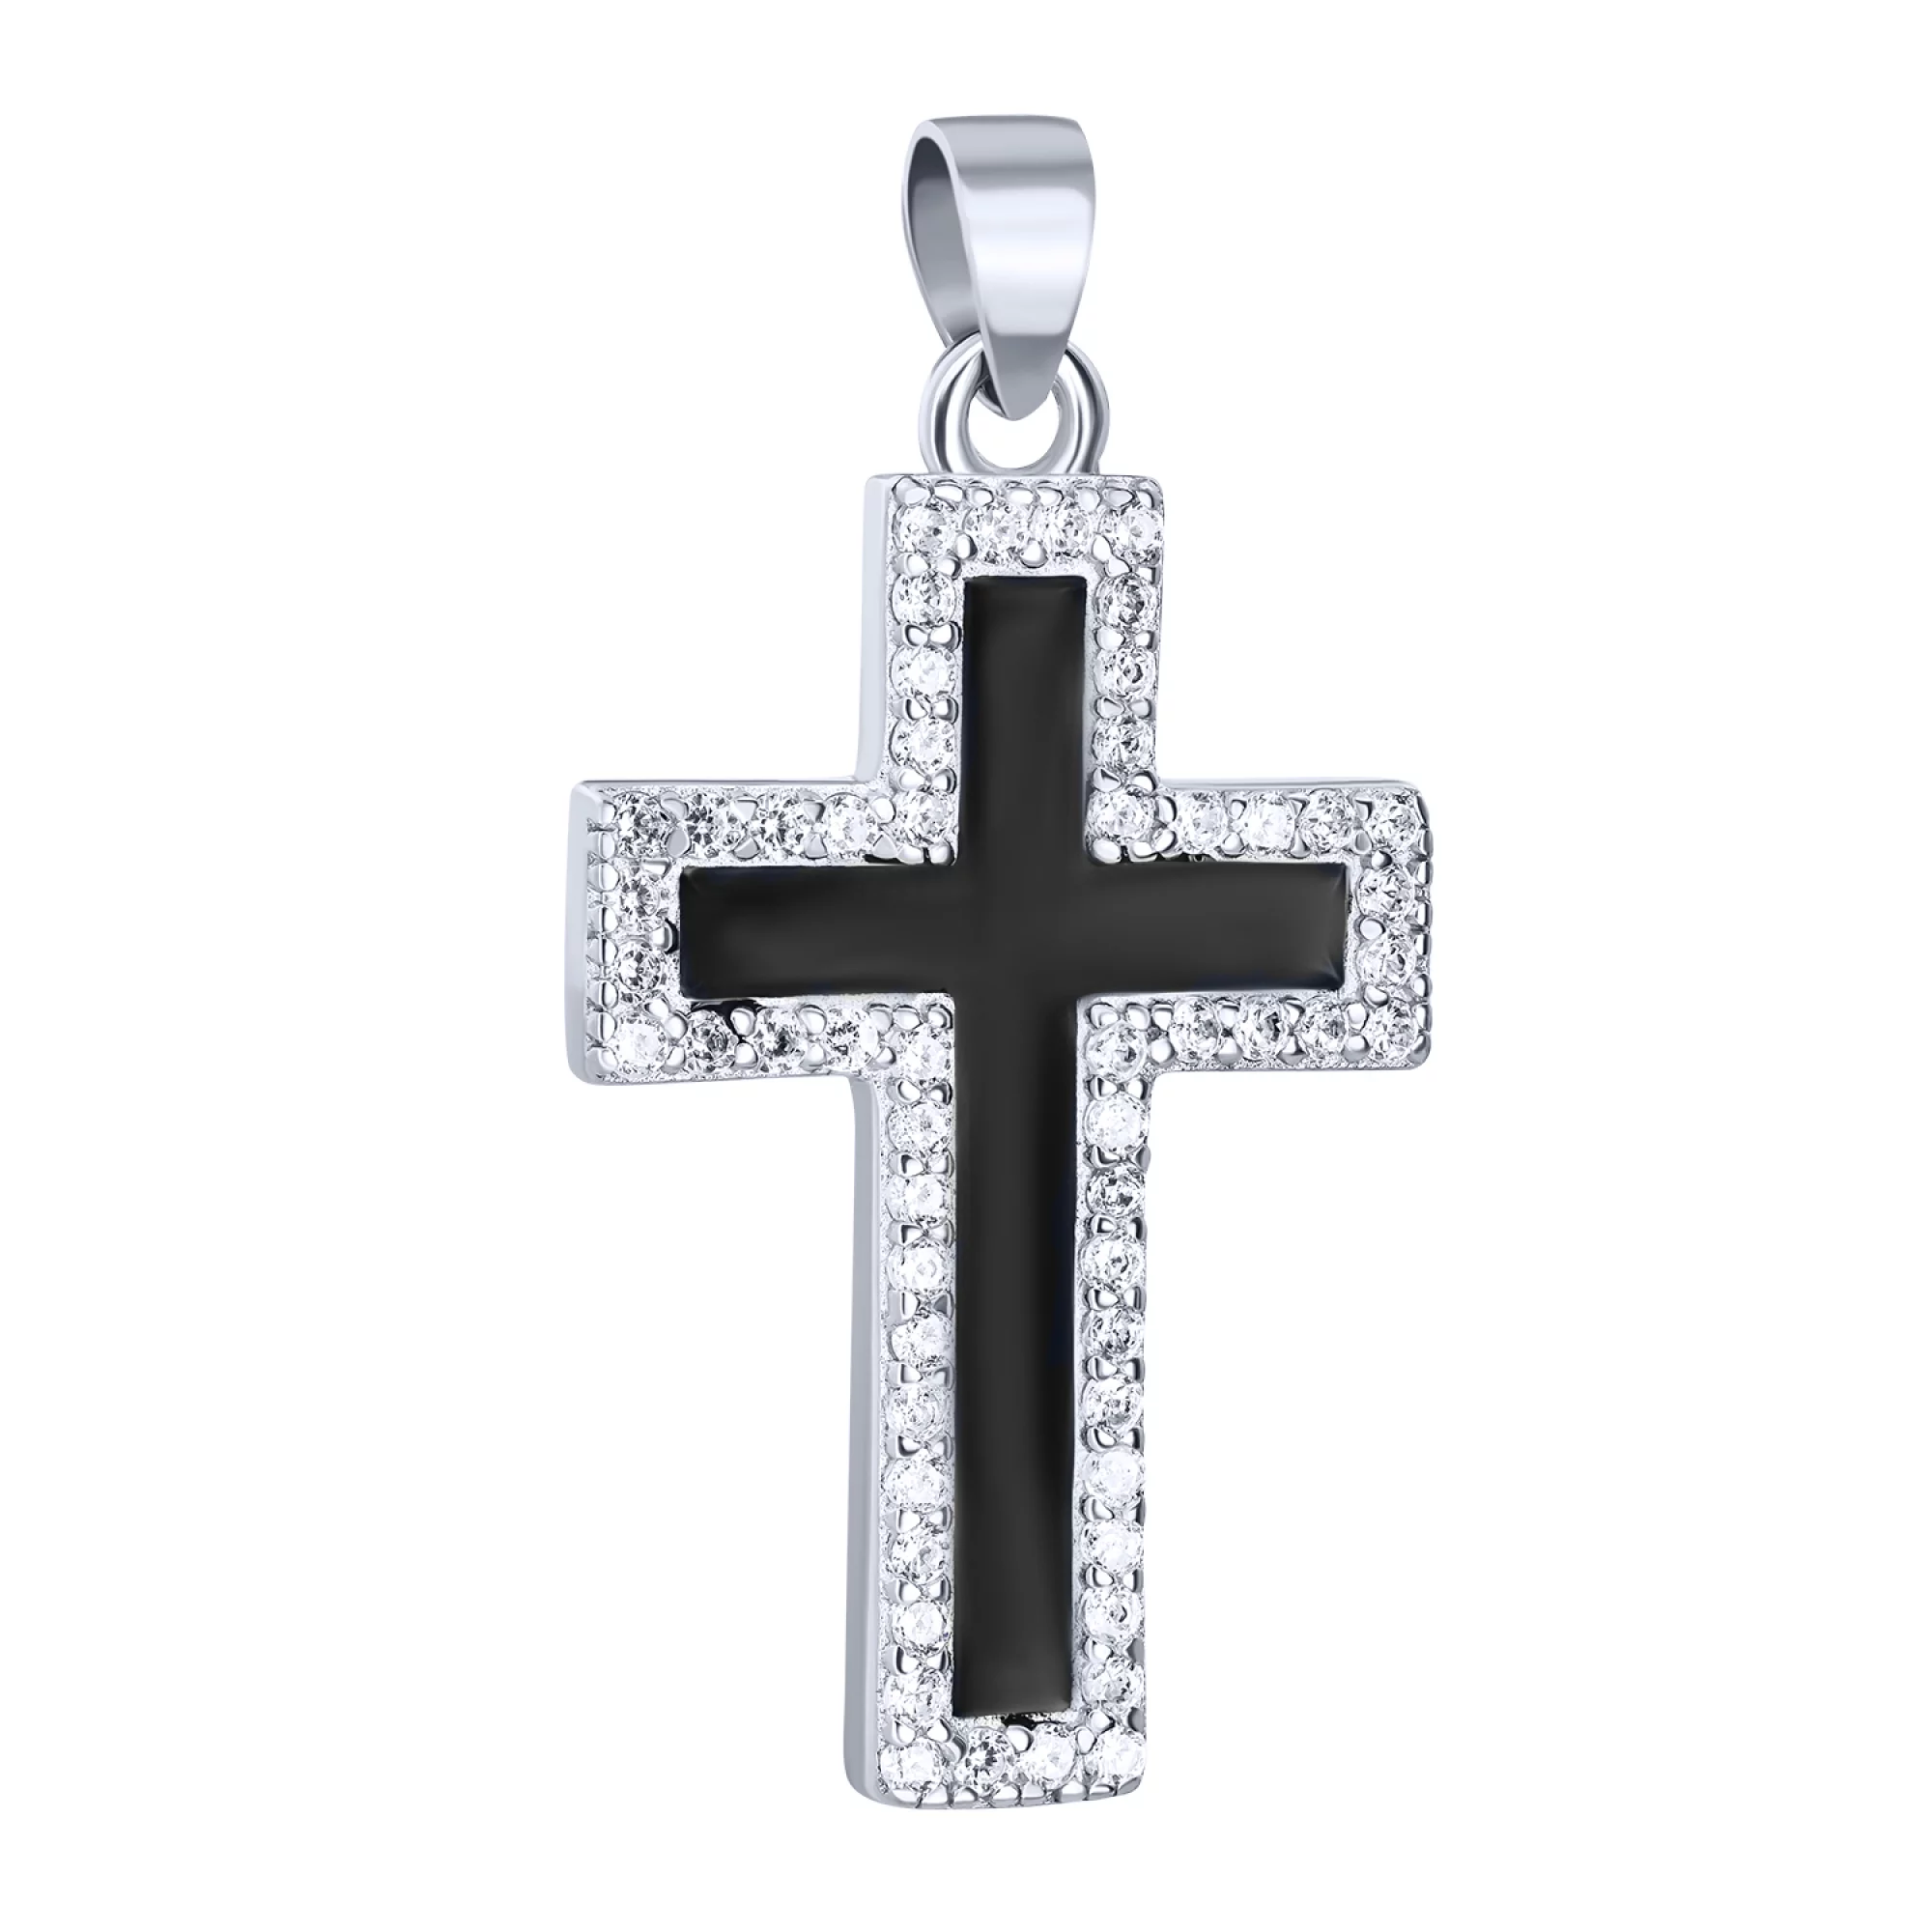 Декоративний срібний хрестик з емаллю та фіанітами - 1612875 – зображення 1